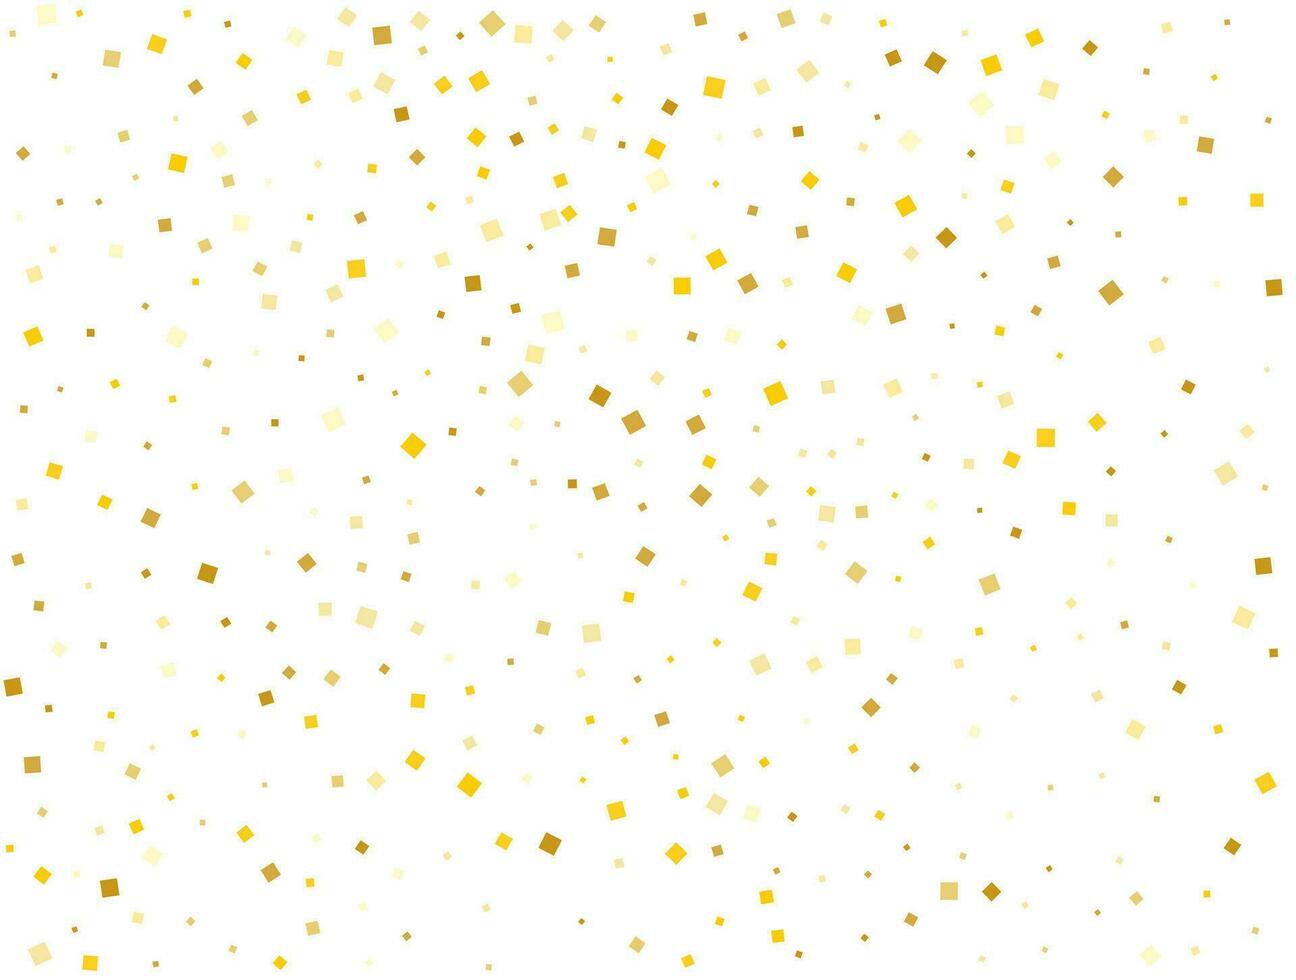 mariage d'or carré confettis. vecteur illustration